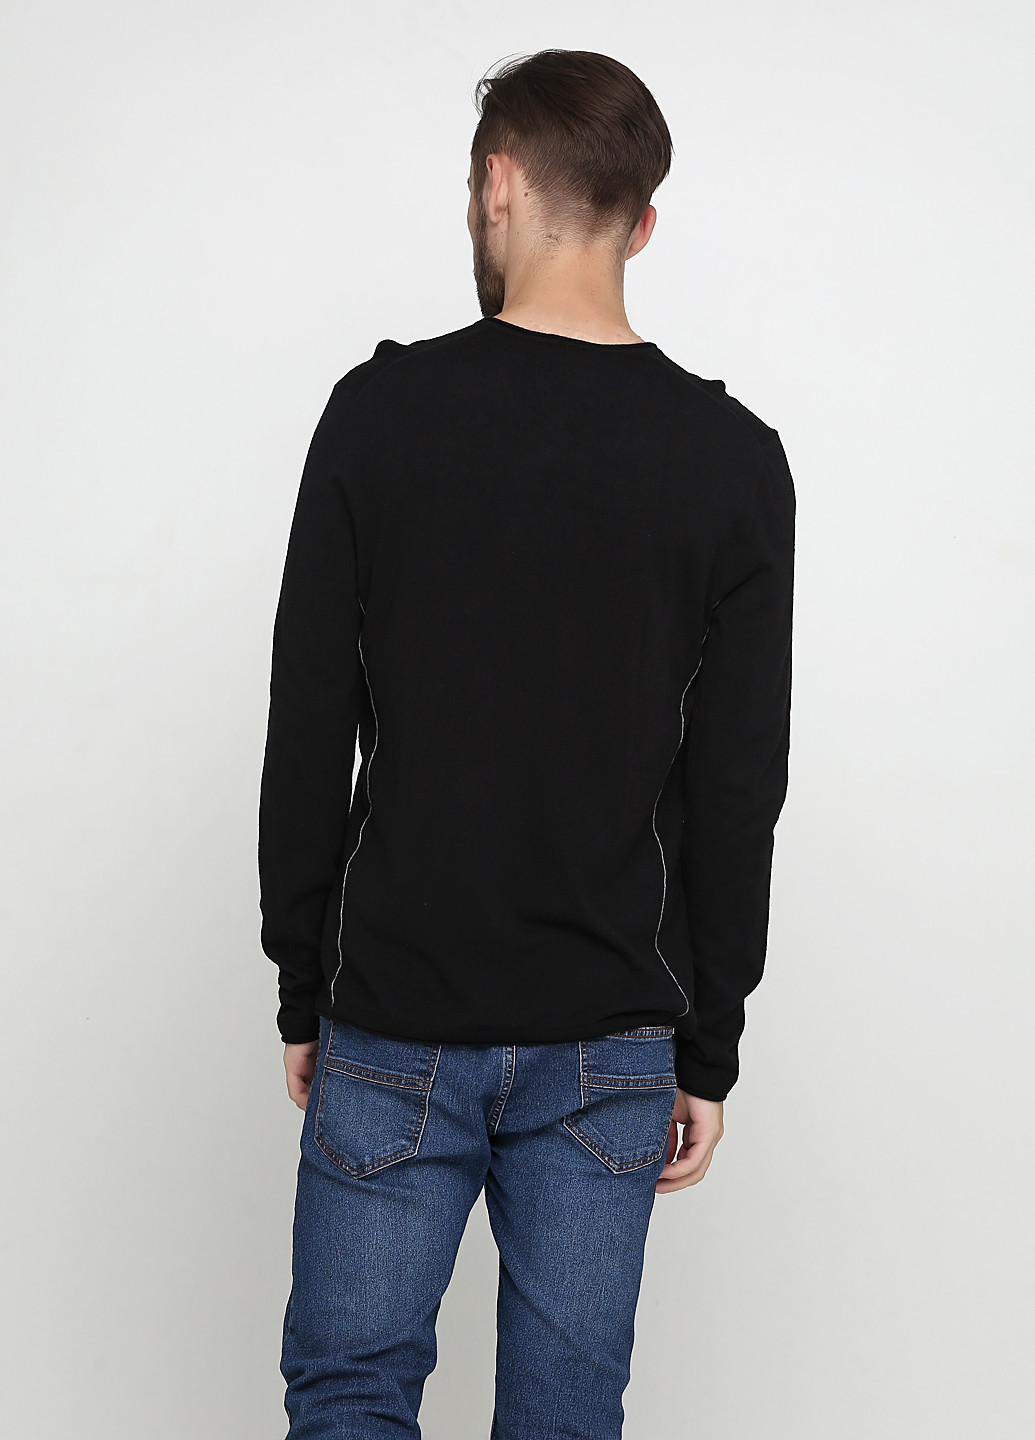 Черный демисезонный пуловер пуловер Sisley